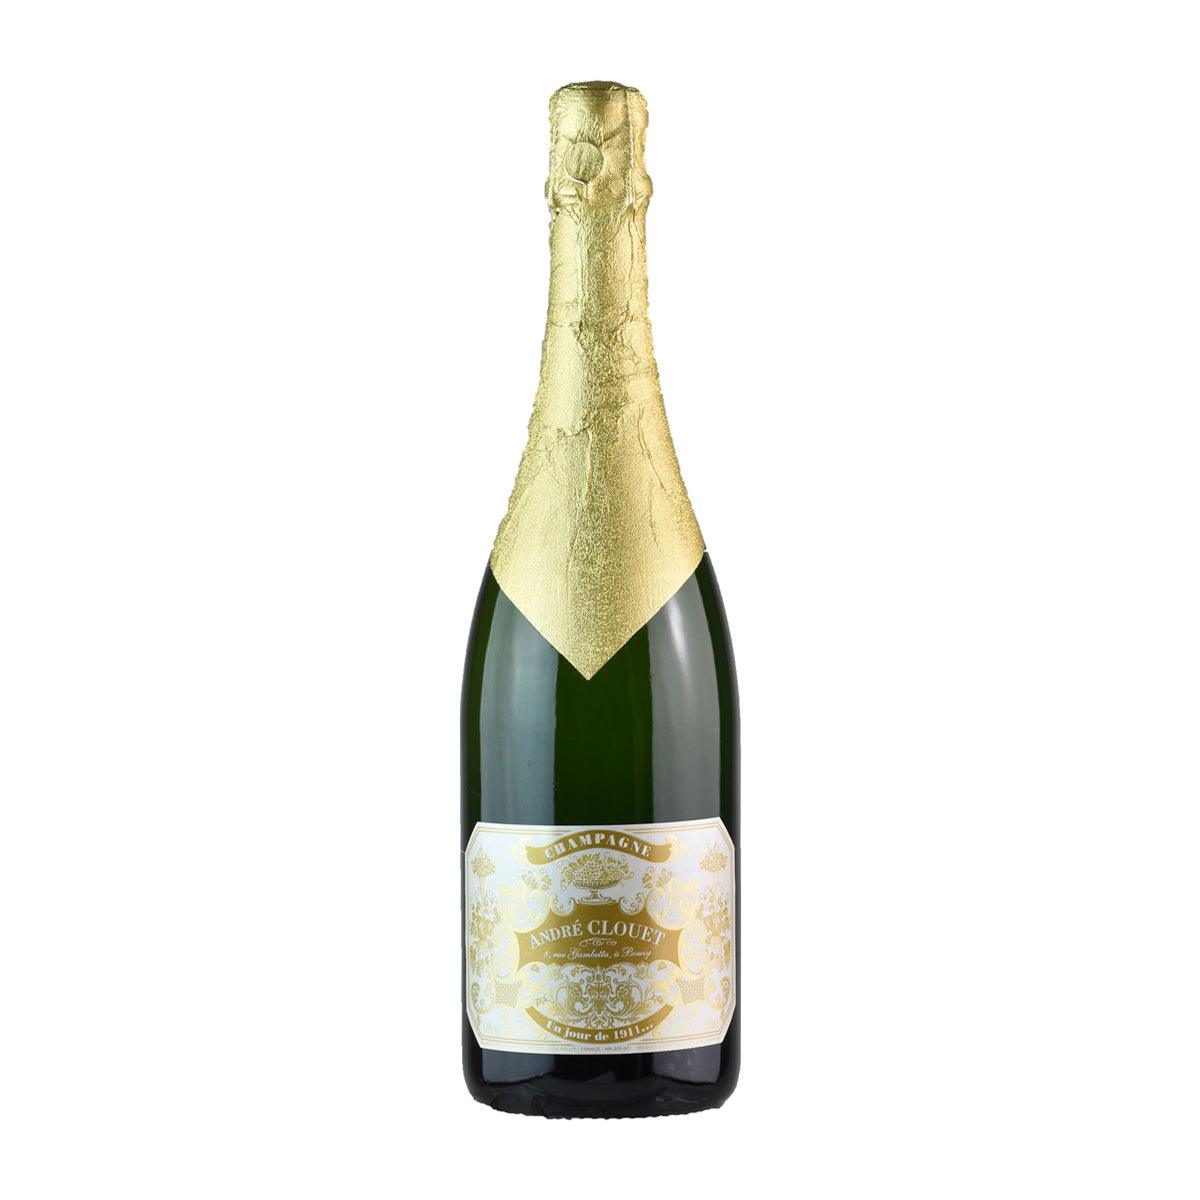 Andre Clouet Champagne Un jour de 1911... - Champagne - GDV Fine Wines® - 750ml, AG93+, Bouzy, Champagne, Champagne Andre Clouet, France, JS95, Non-Vintage, WA96, Wine Product